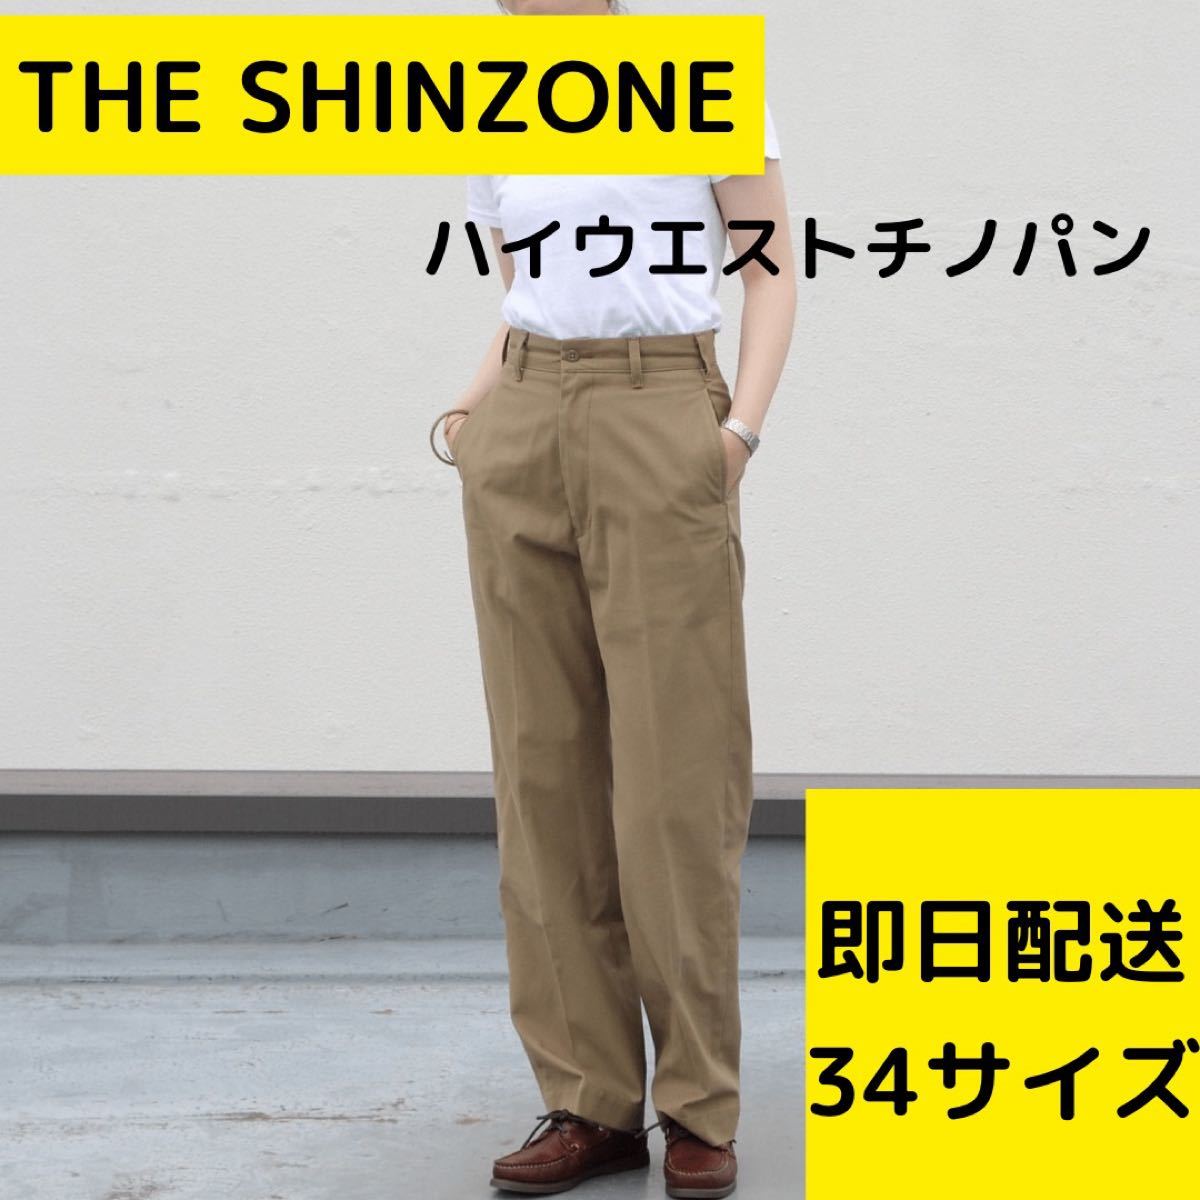 魅力的な THE SHINZONE TOOL PANTS 新品 Sサイズ 32 ilam.org